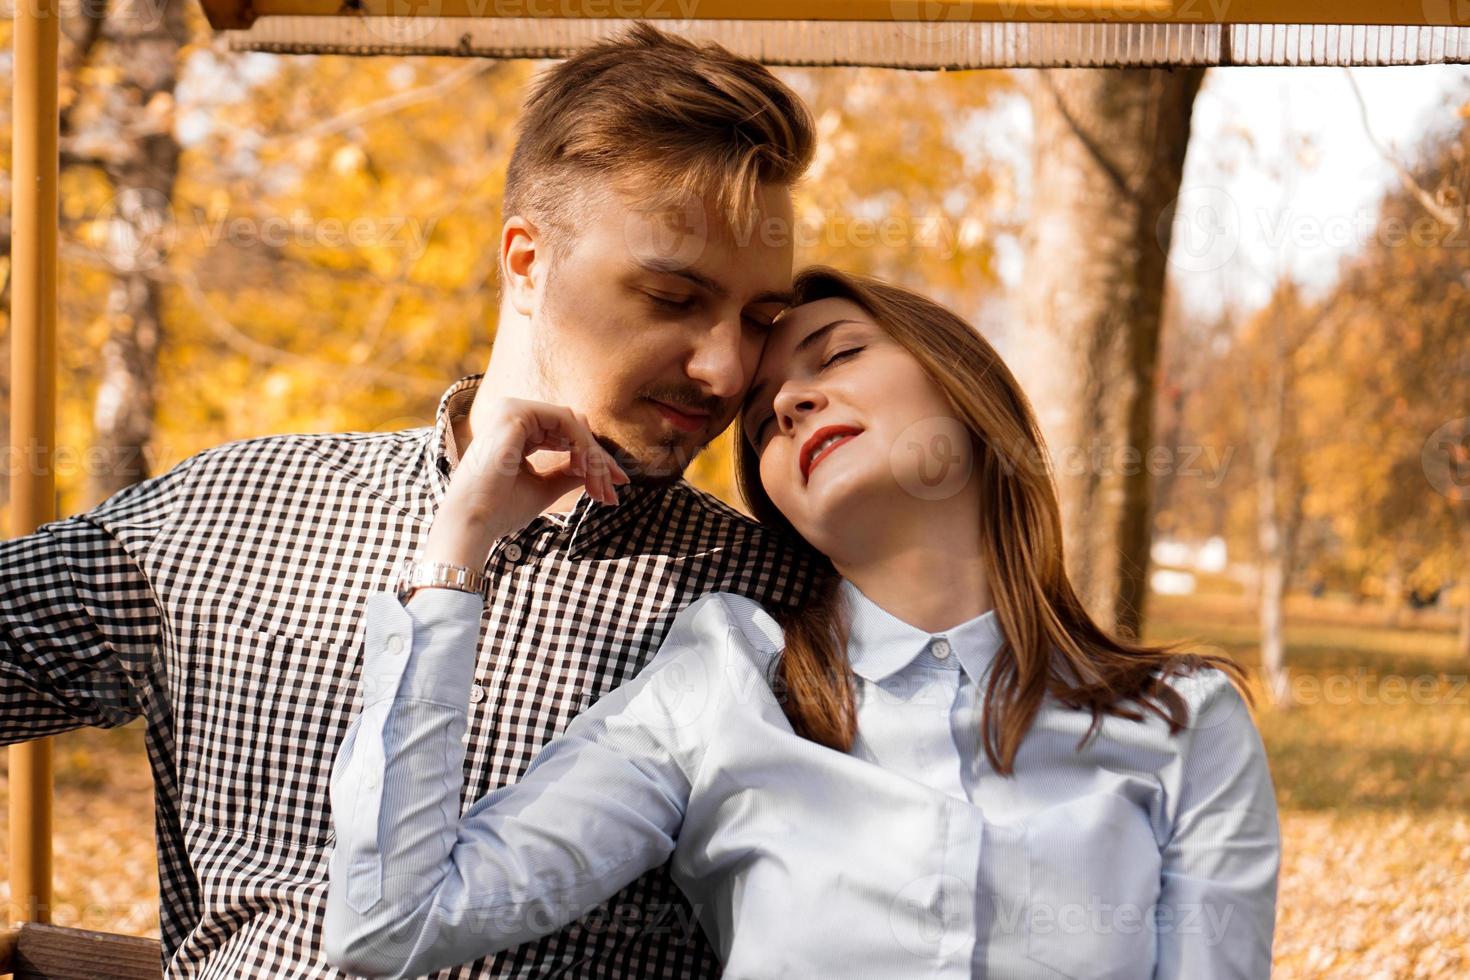 romantisch koppel in herfstpark - liefde, relatie en datingconcept foto